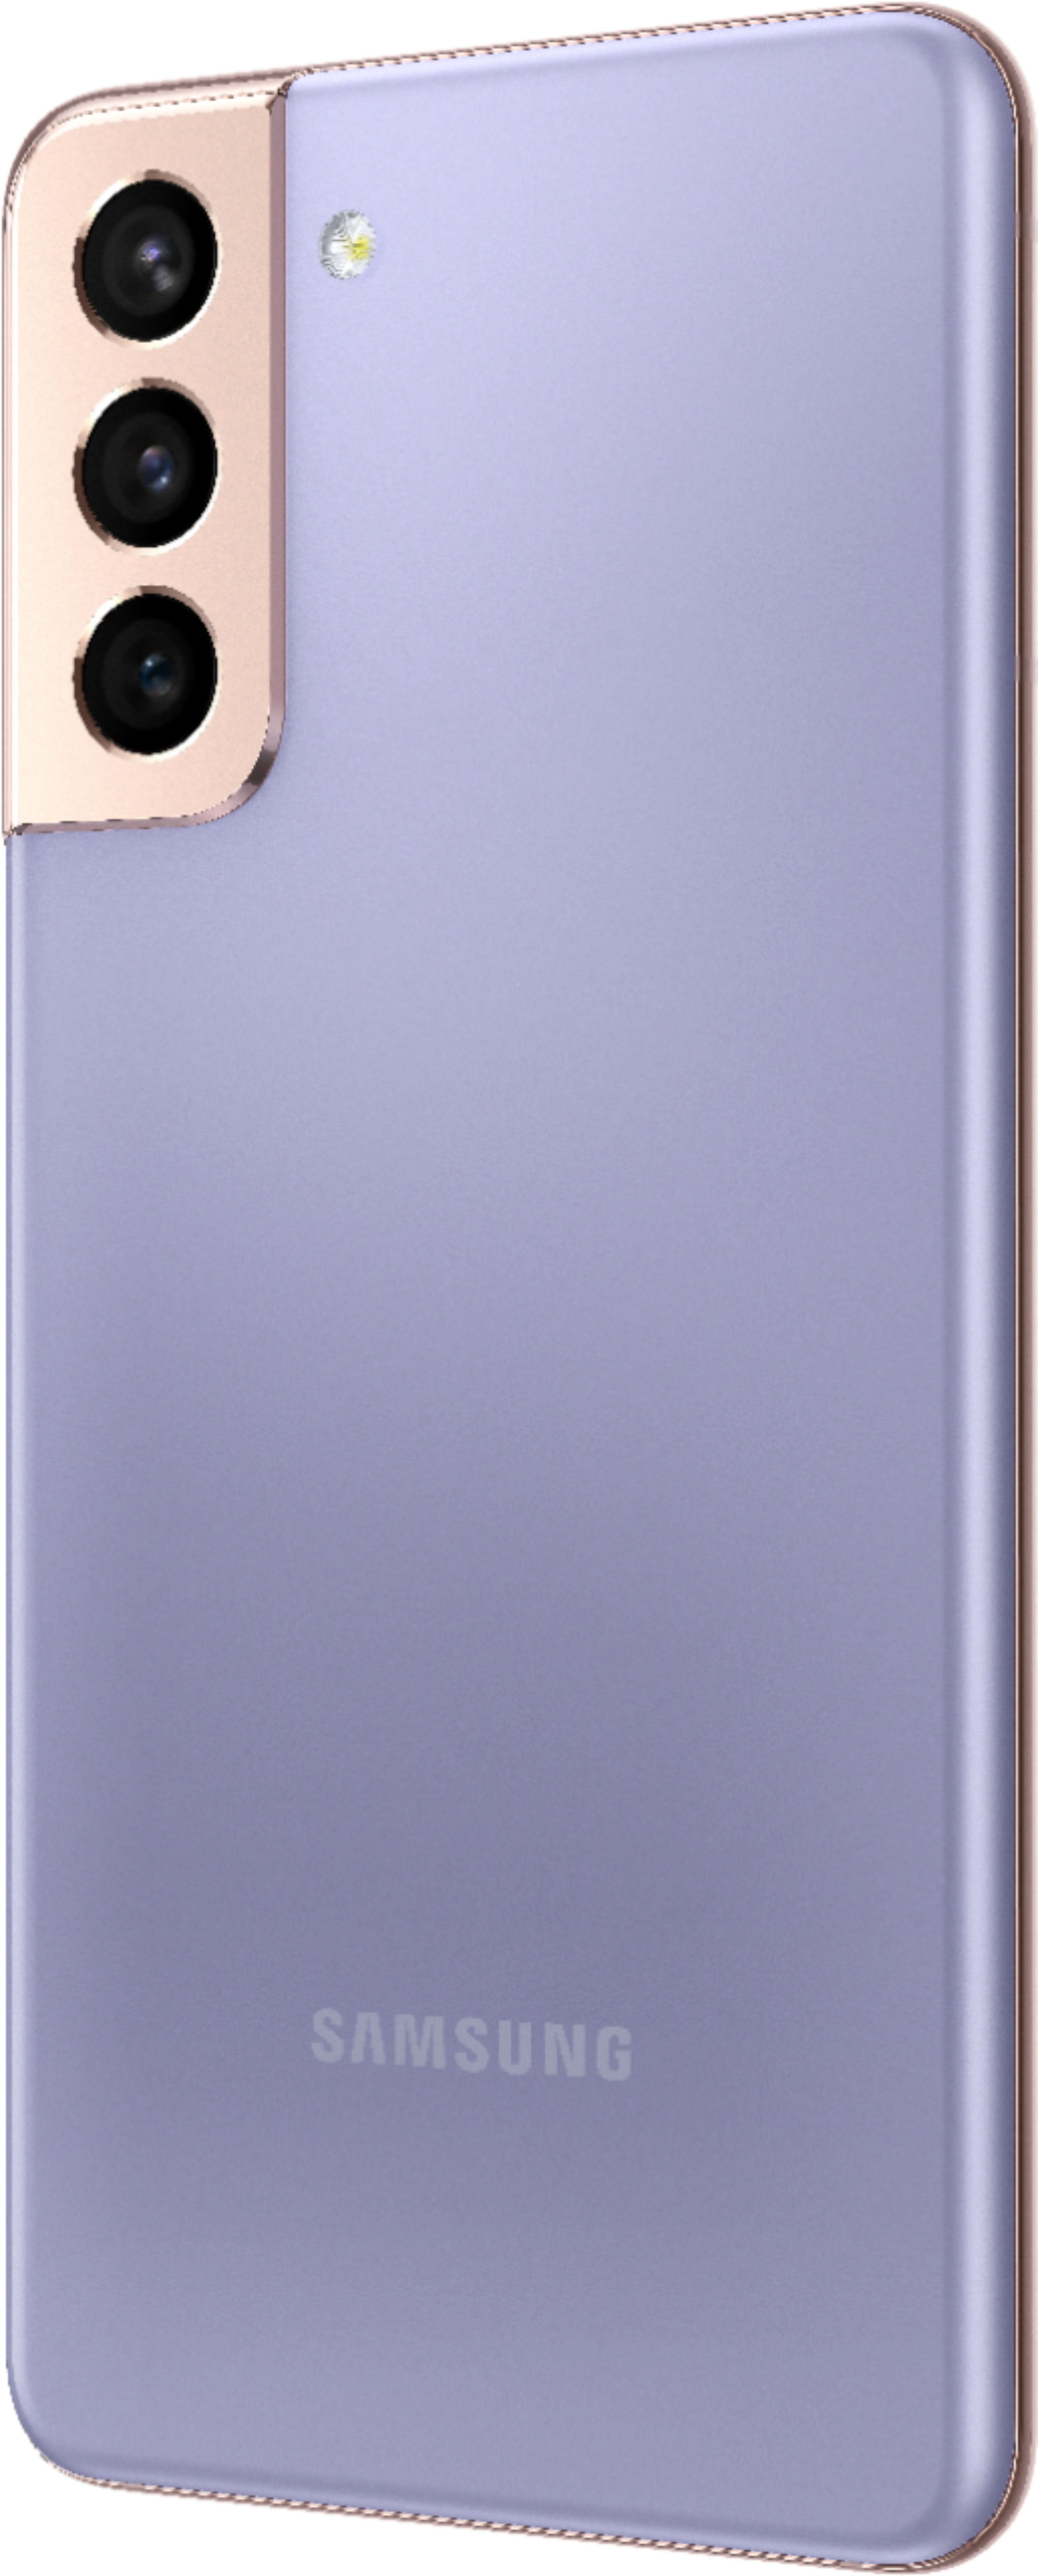 Samsung Galaxy S21 5G 128GB Gray - Unlocked